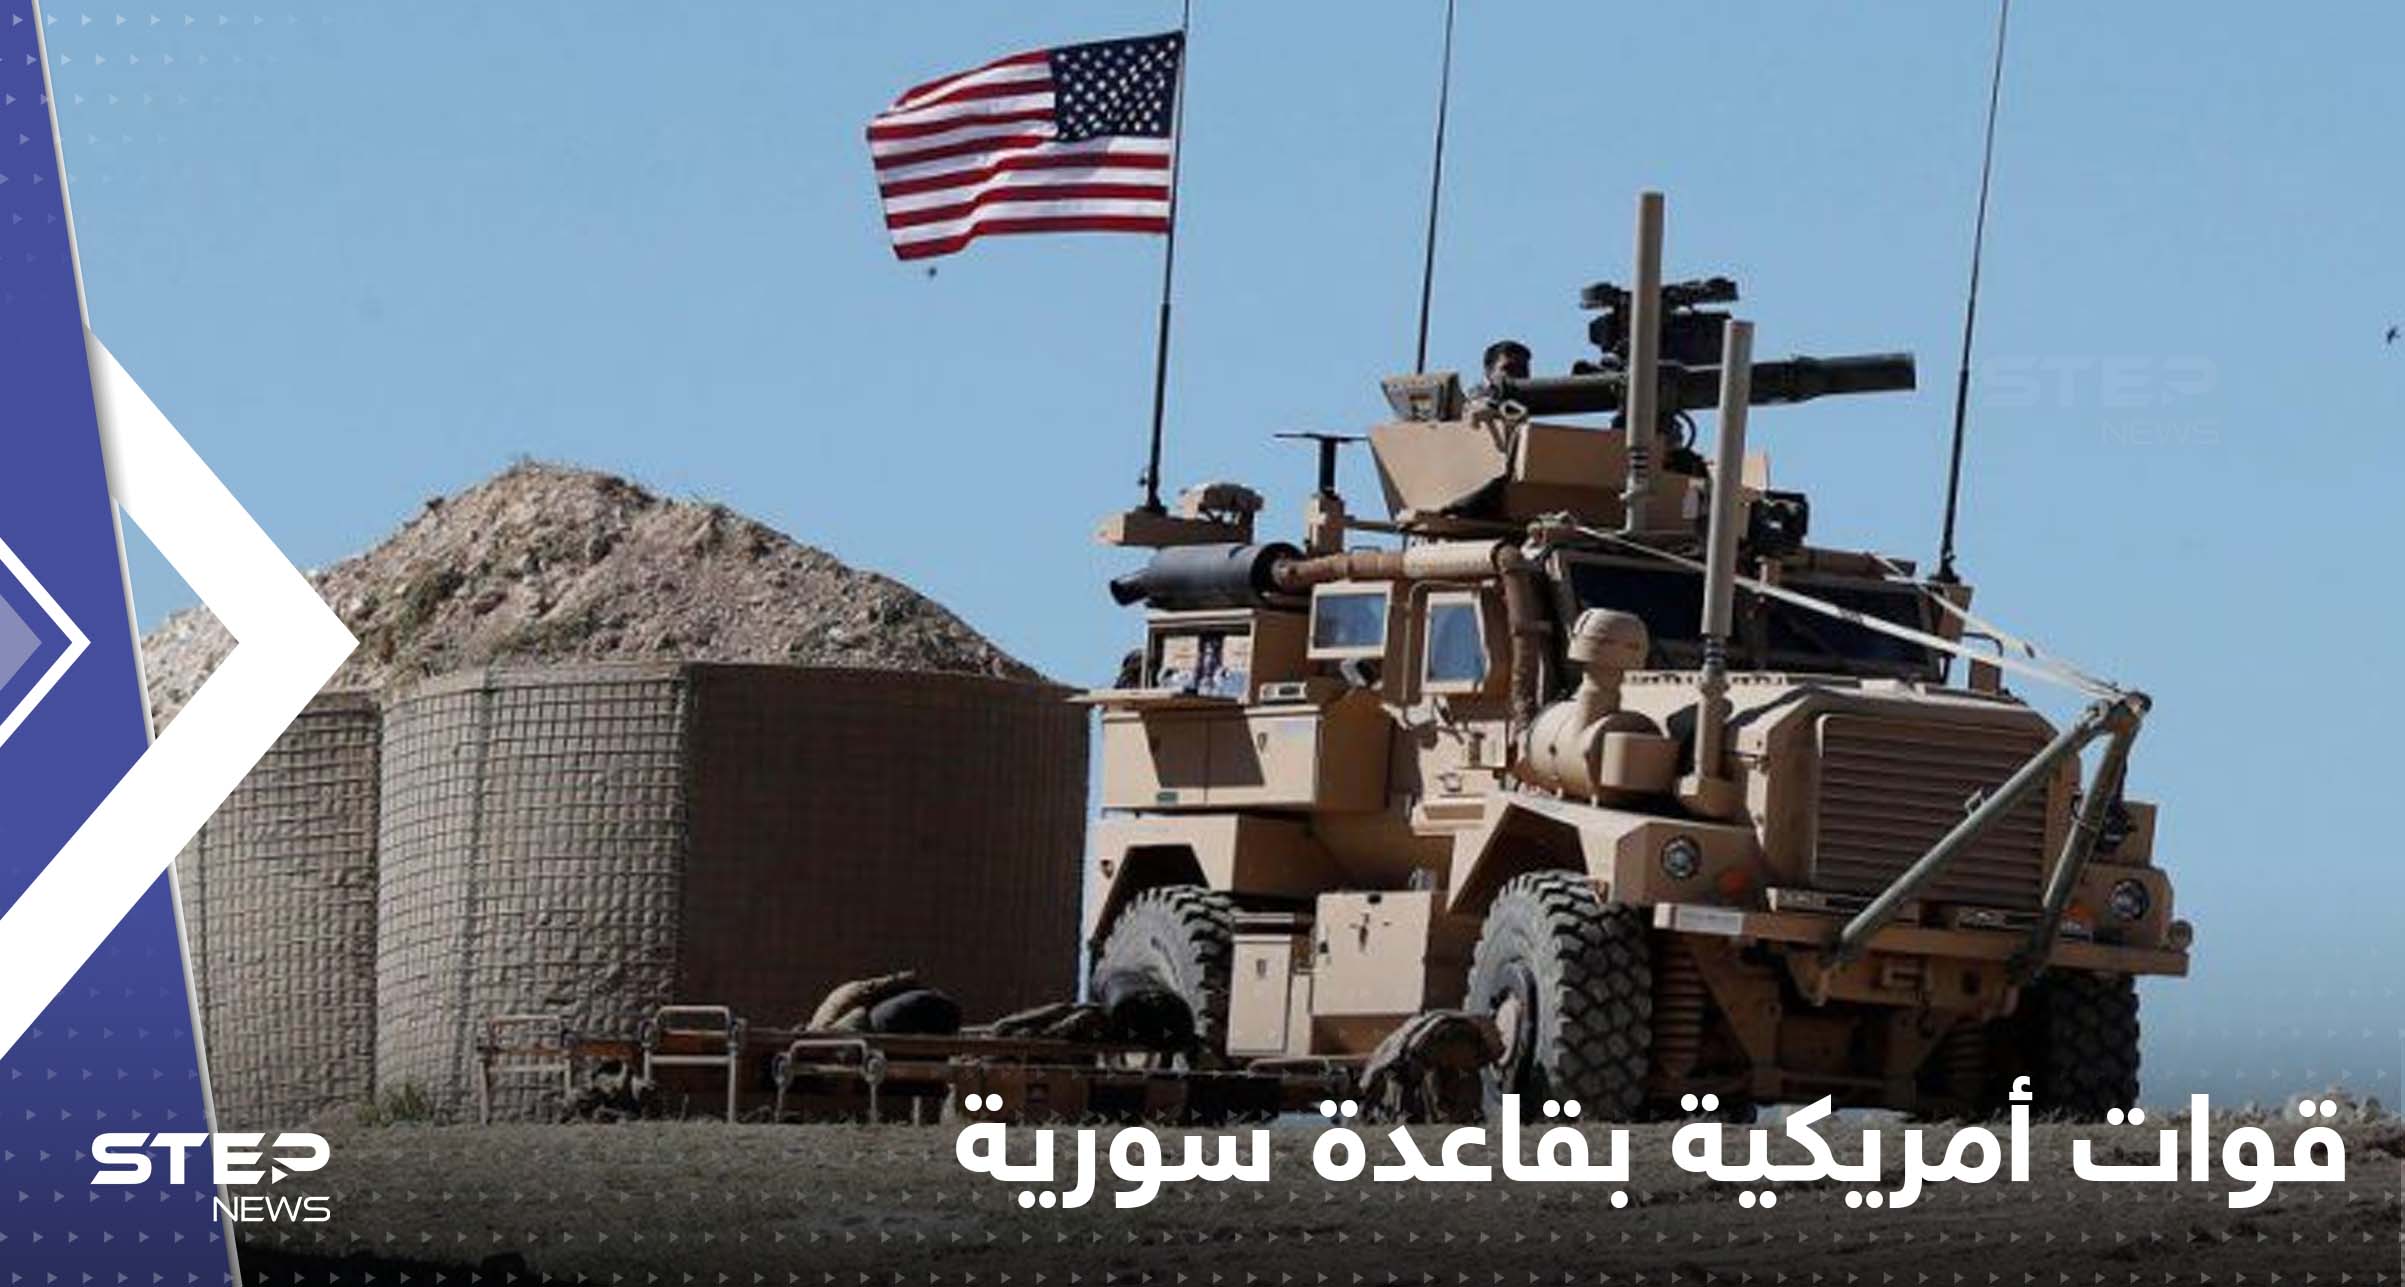 أعلام أمريكية فوق موقع عسكري سوري شمال مدينة الرقة.. ومصدر يكشف السبب